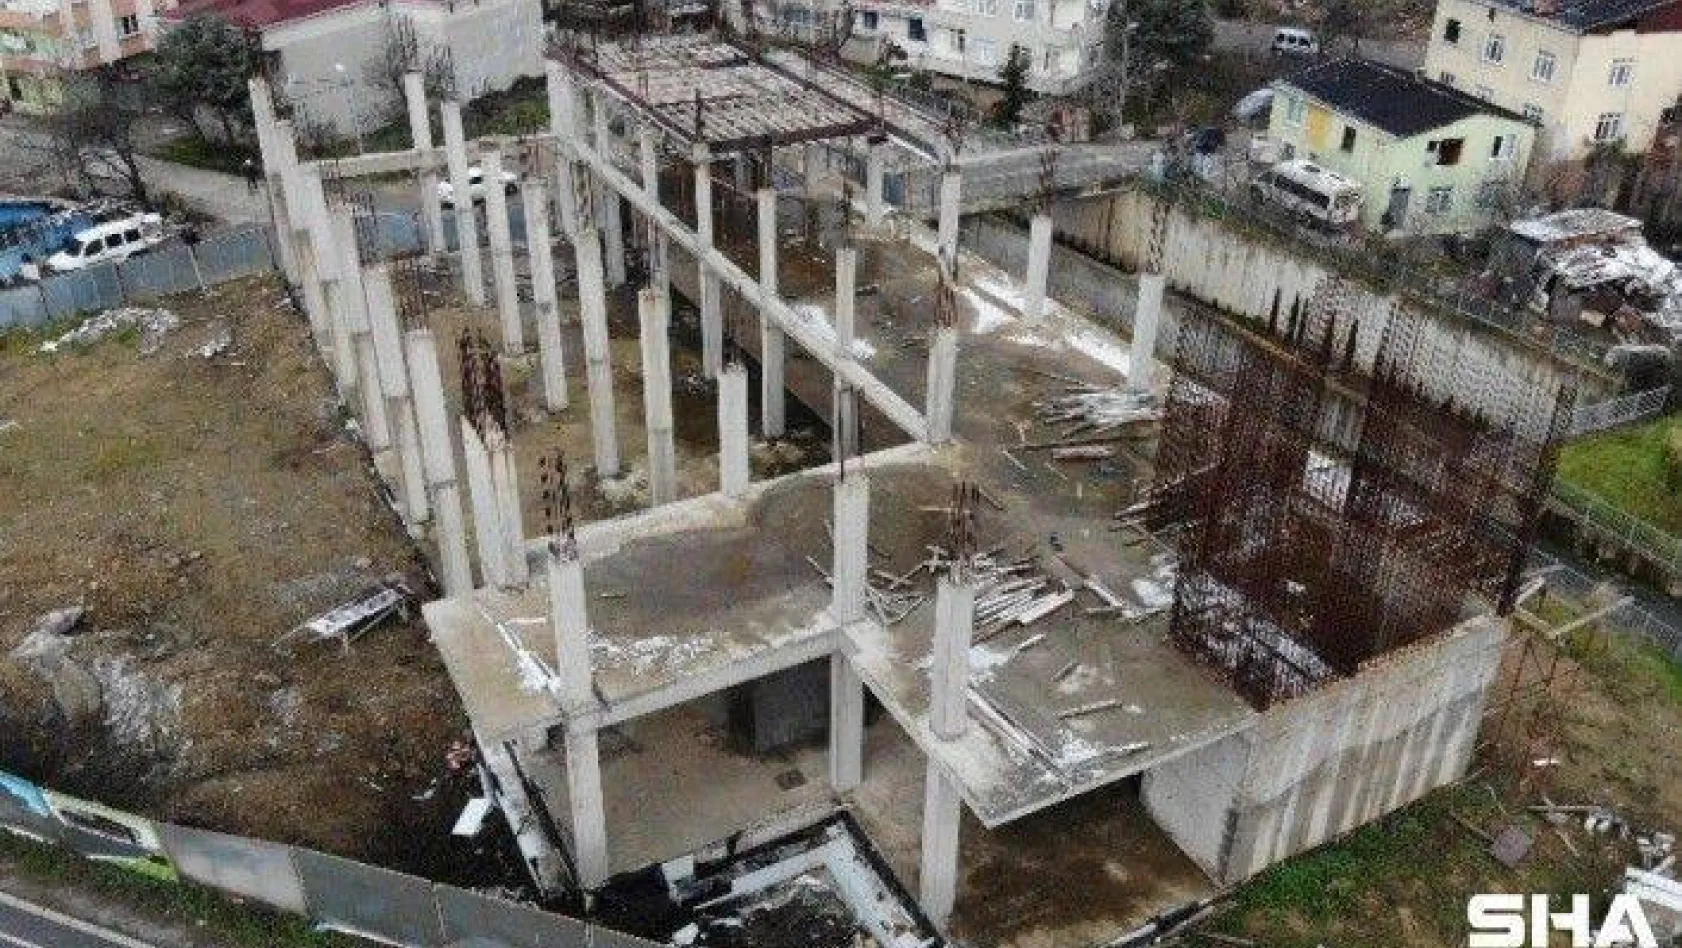 Çekmeköy'de itfaiye istasyonu inşaatı, hurdacıların istilasına uğradı